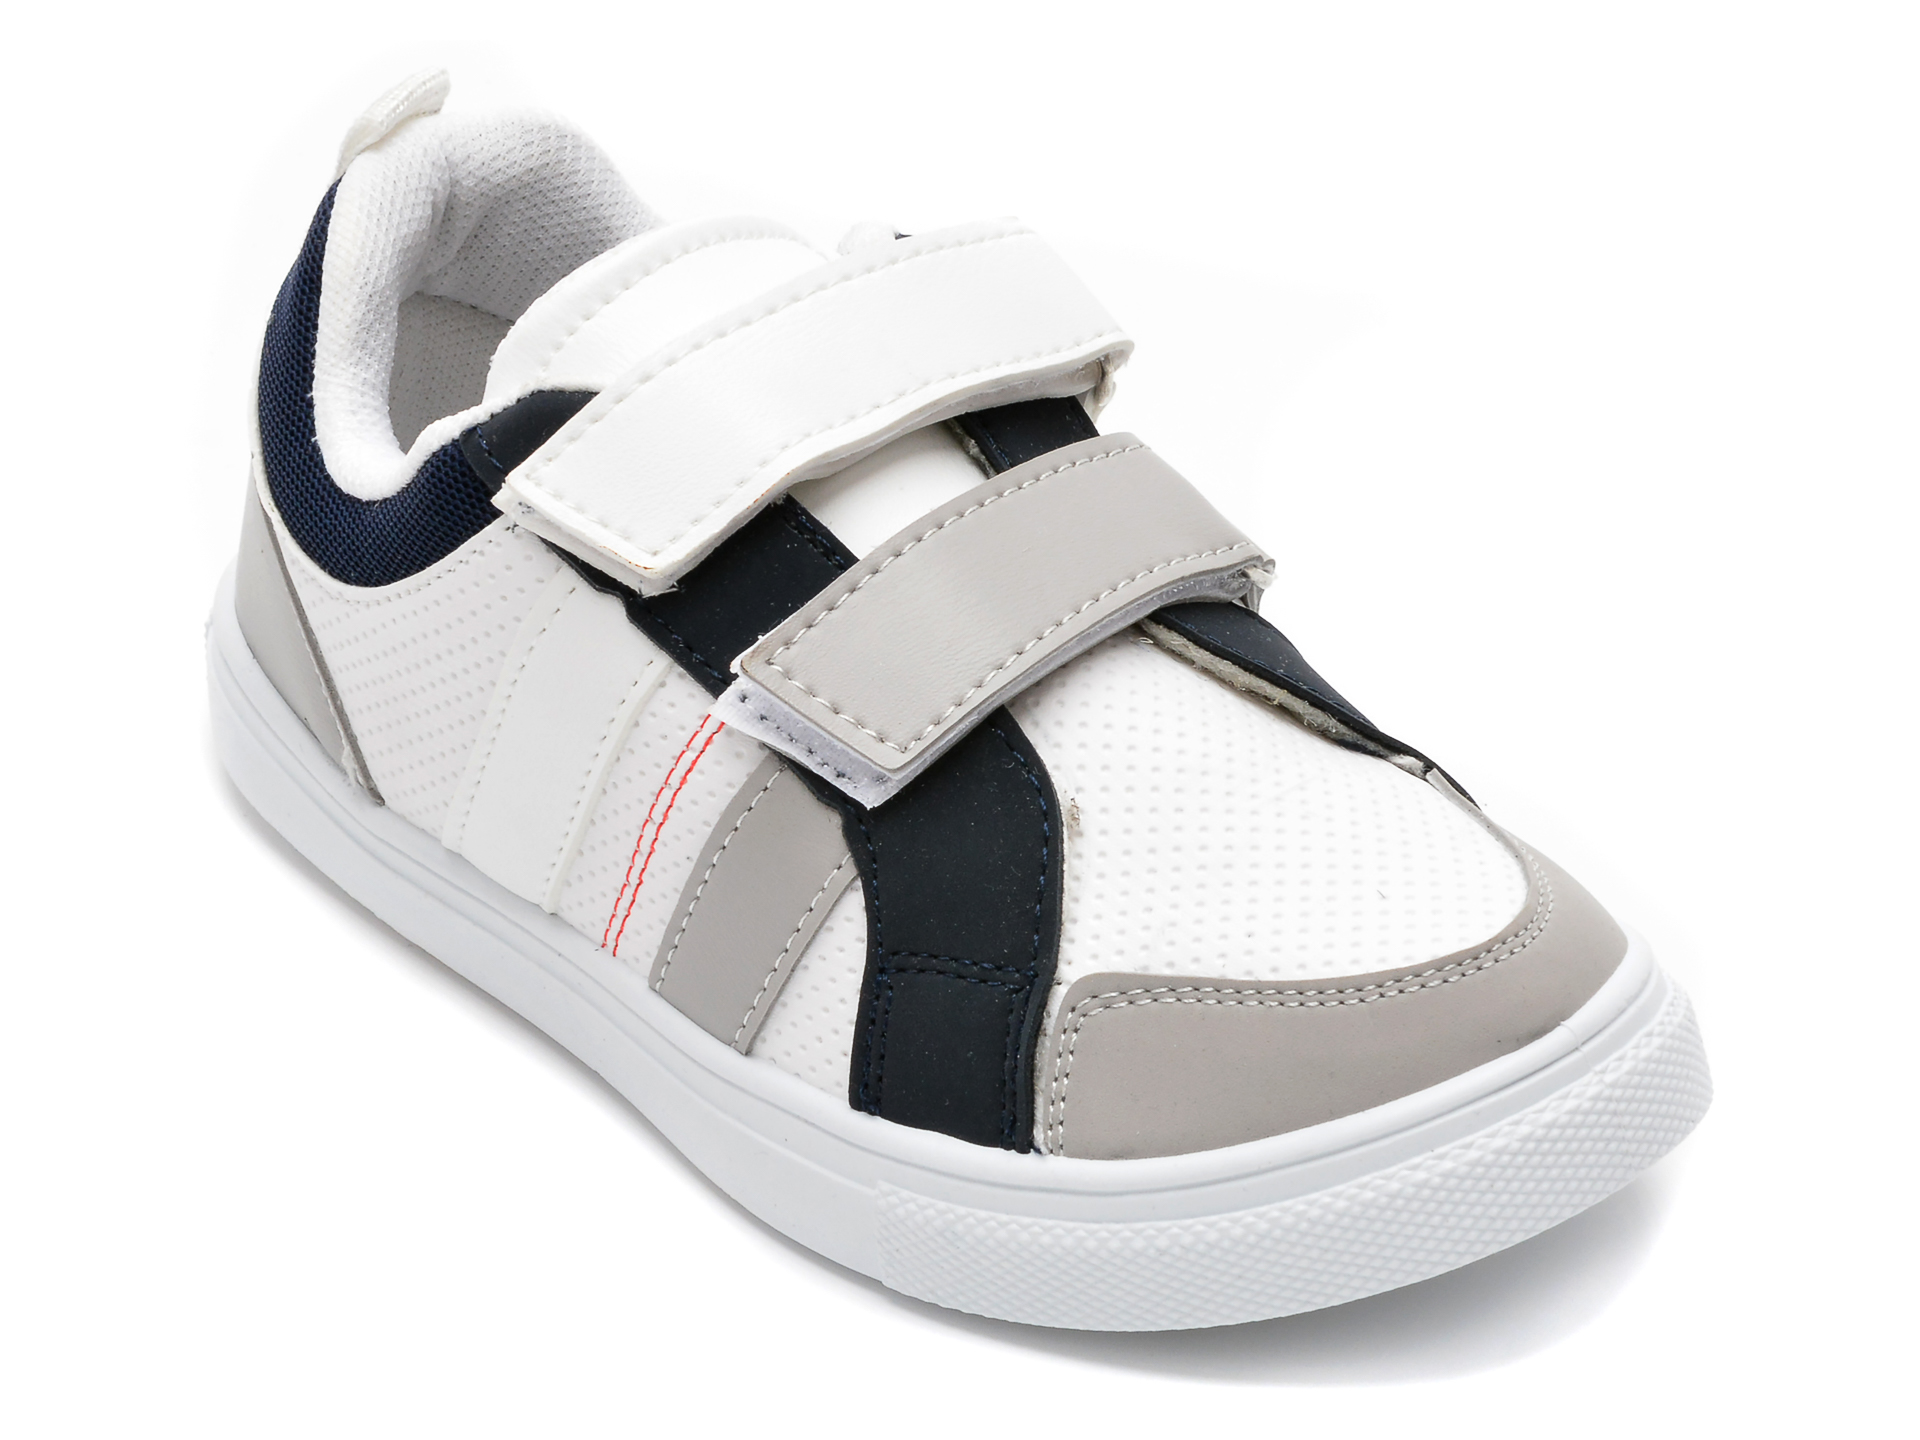 Pantofi sport POLARIS albi, 520209, din piele ecologica /copii/incaltaminte